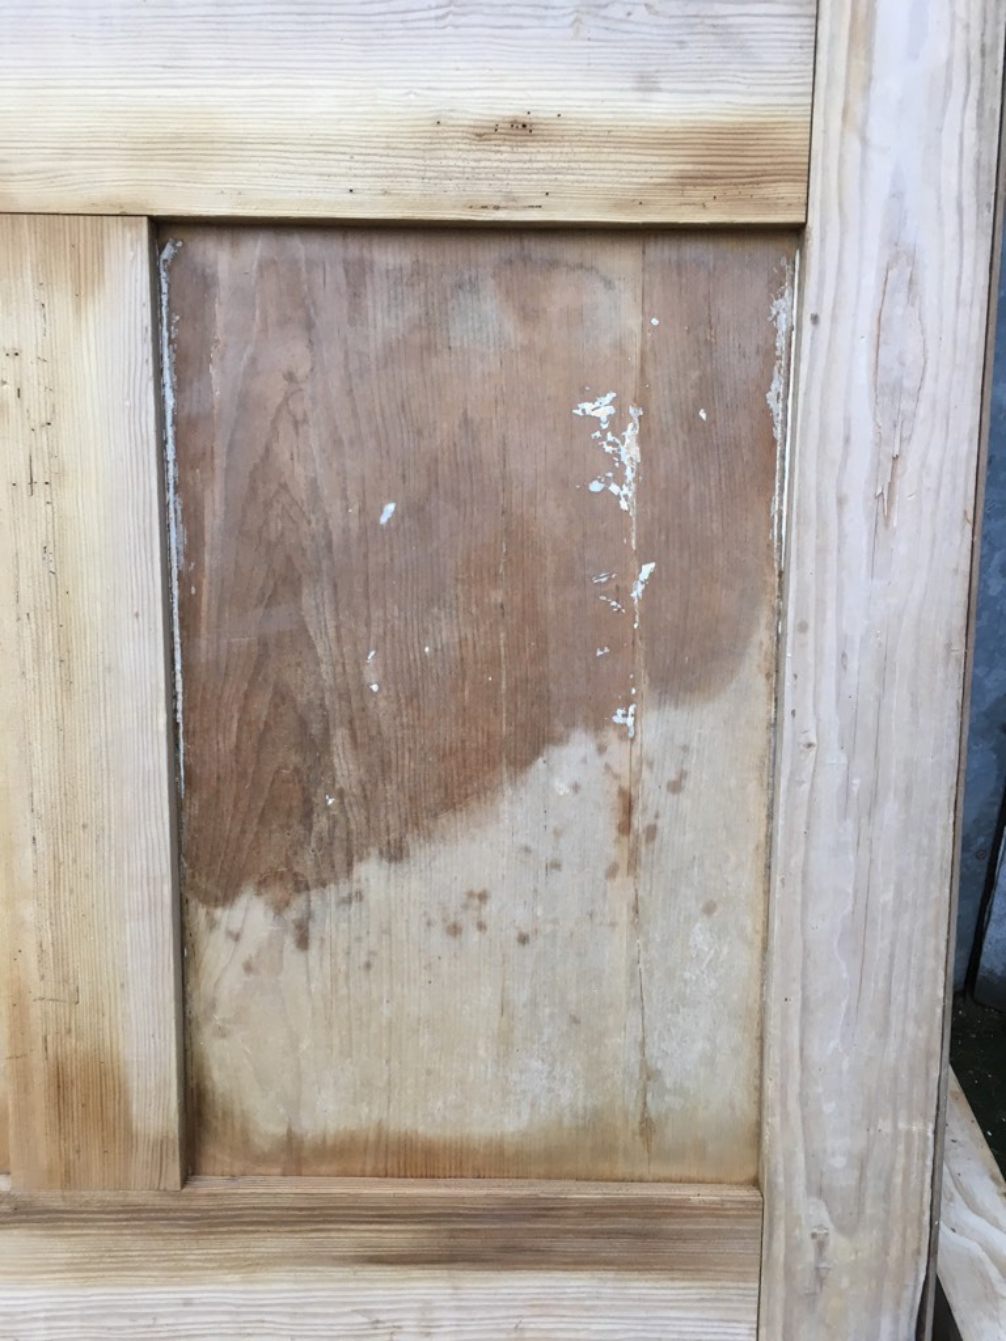 34 5/8x71 5/8” Victorian Stripped Pine 4 Panel 2 Over 2 Short Wide Internal Door